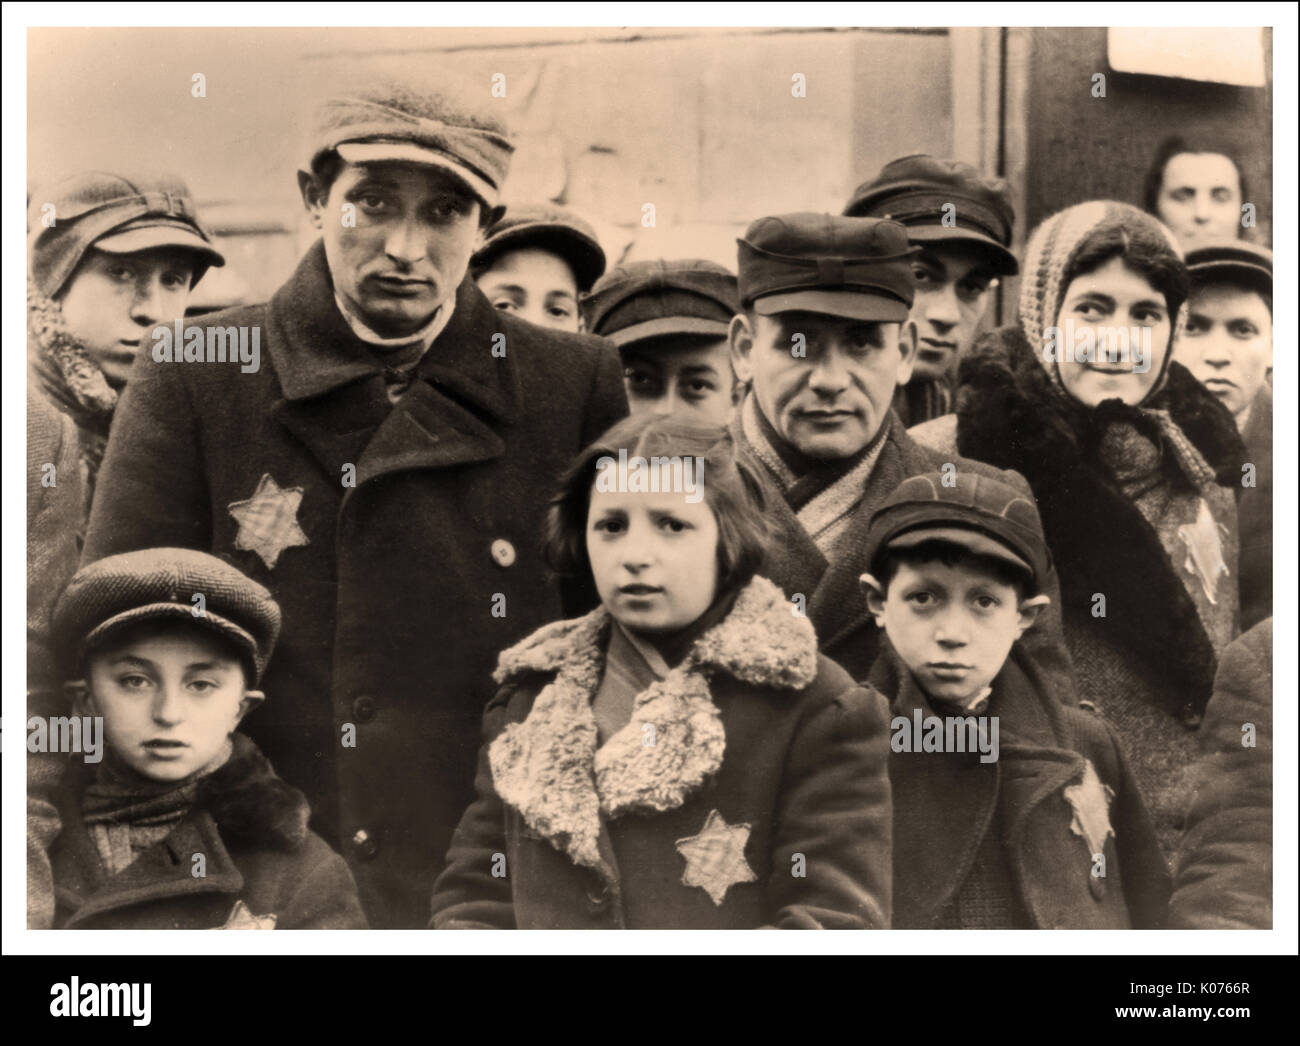 IM berüchtigten polnischen Ghetto Lodz starren Frauen und Kinder aus Angst auf die Kamera der Nazi-Fotografen und tragen gelbe Nazi-Sterne, die als „Davidstern“ bezeichnet werden, um jüdische Menschen zu bezeichnen. Die meisten wurden in Nazi-Konzentrationslager gebracht, um Hitlers "endgültige Lösung" zu erfüllen. Unterstützt durch den berüchtigten Kriegsverbrecher Heinrich Himmler. Stockfoto